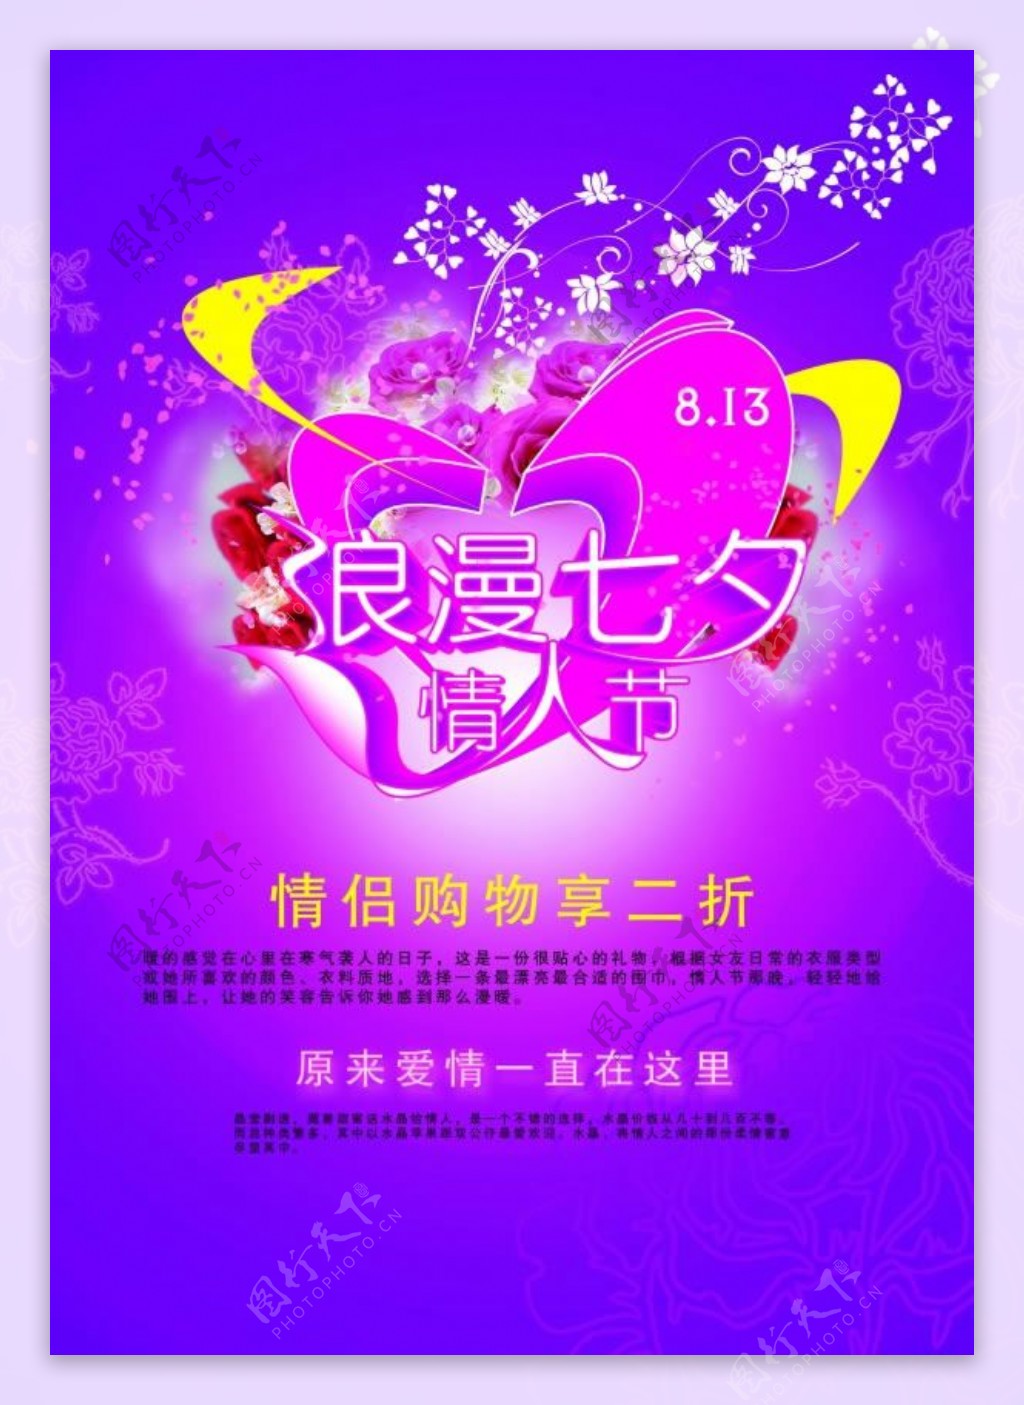 七夕情人节情侣促销宣传海报psd素材